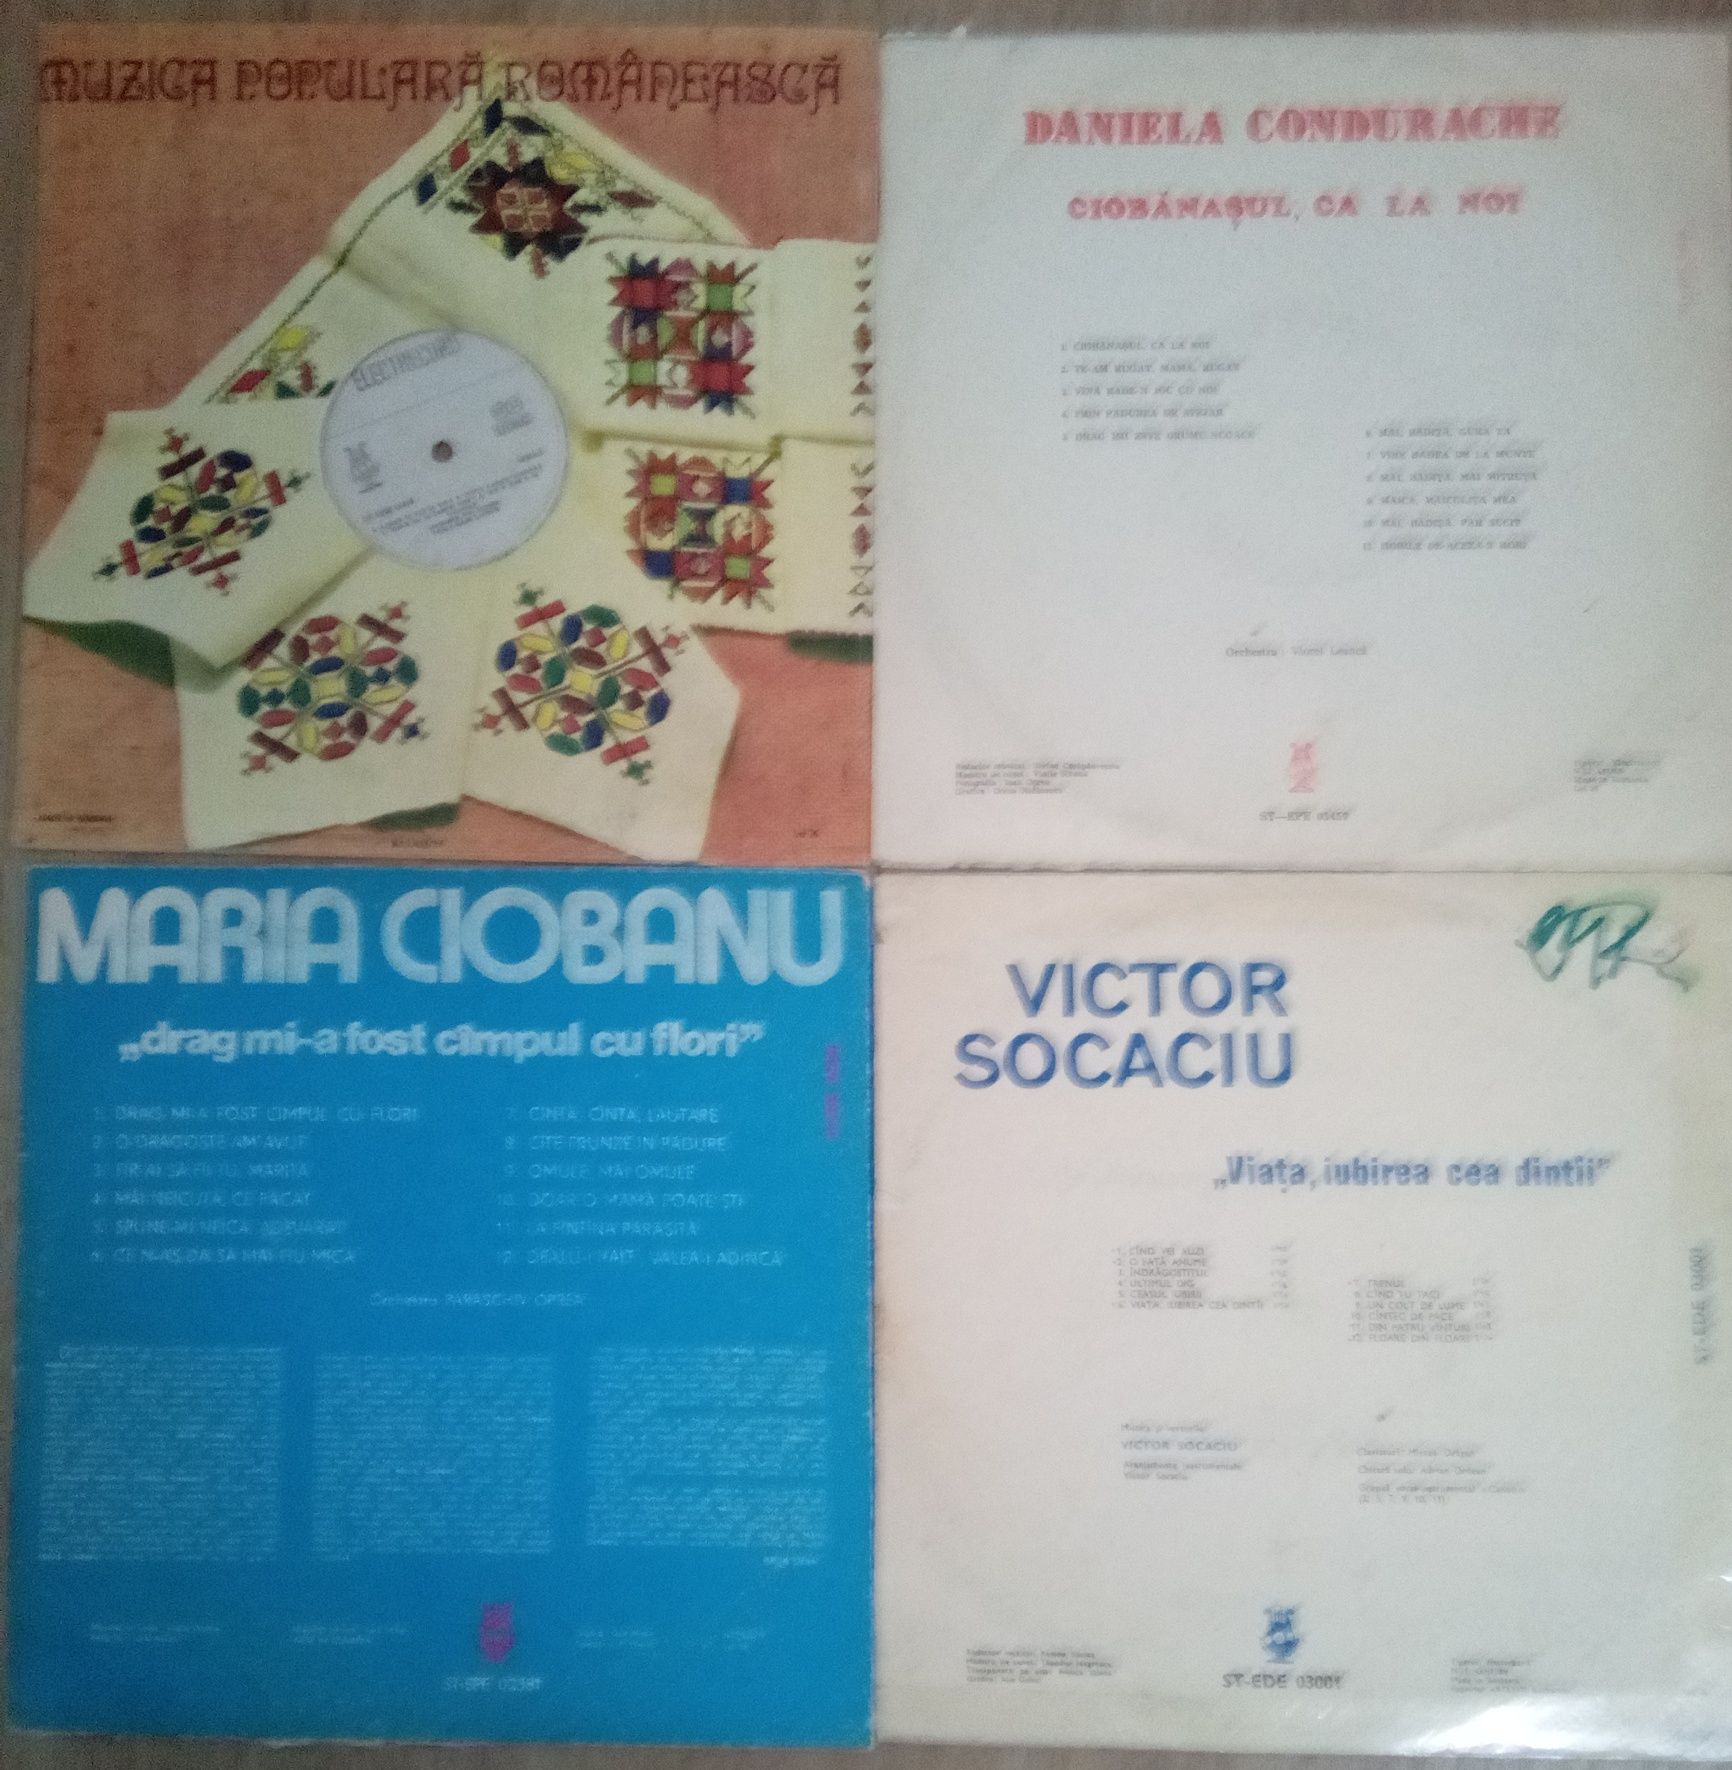 Vând disc Maria Ciobanu și Dragomiroiu, Daniela Condurache, V. Socaciu